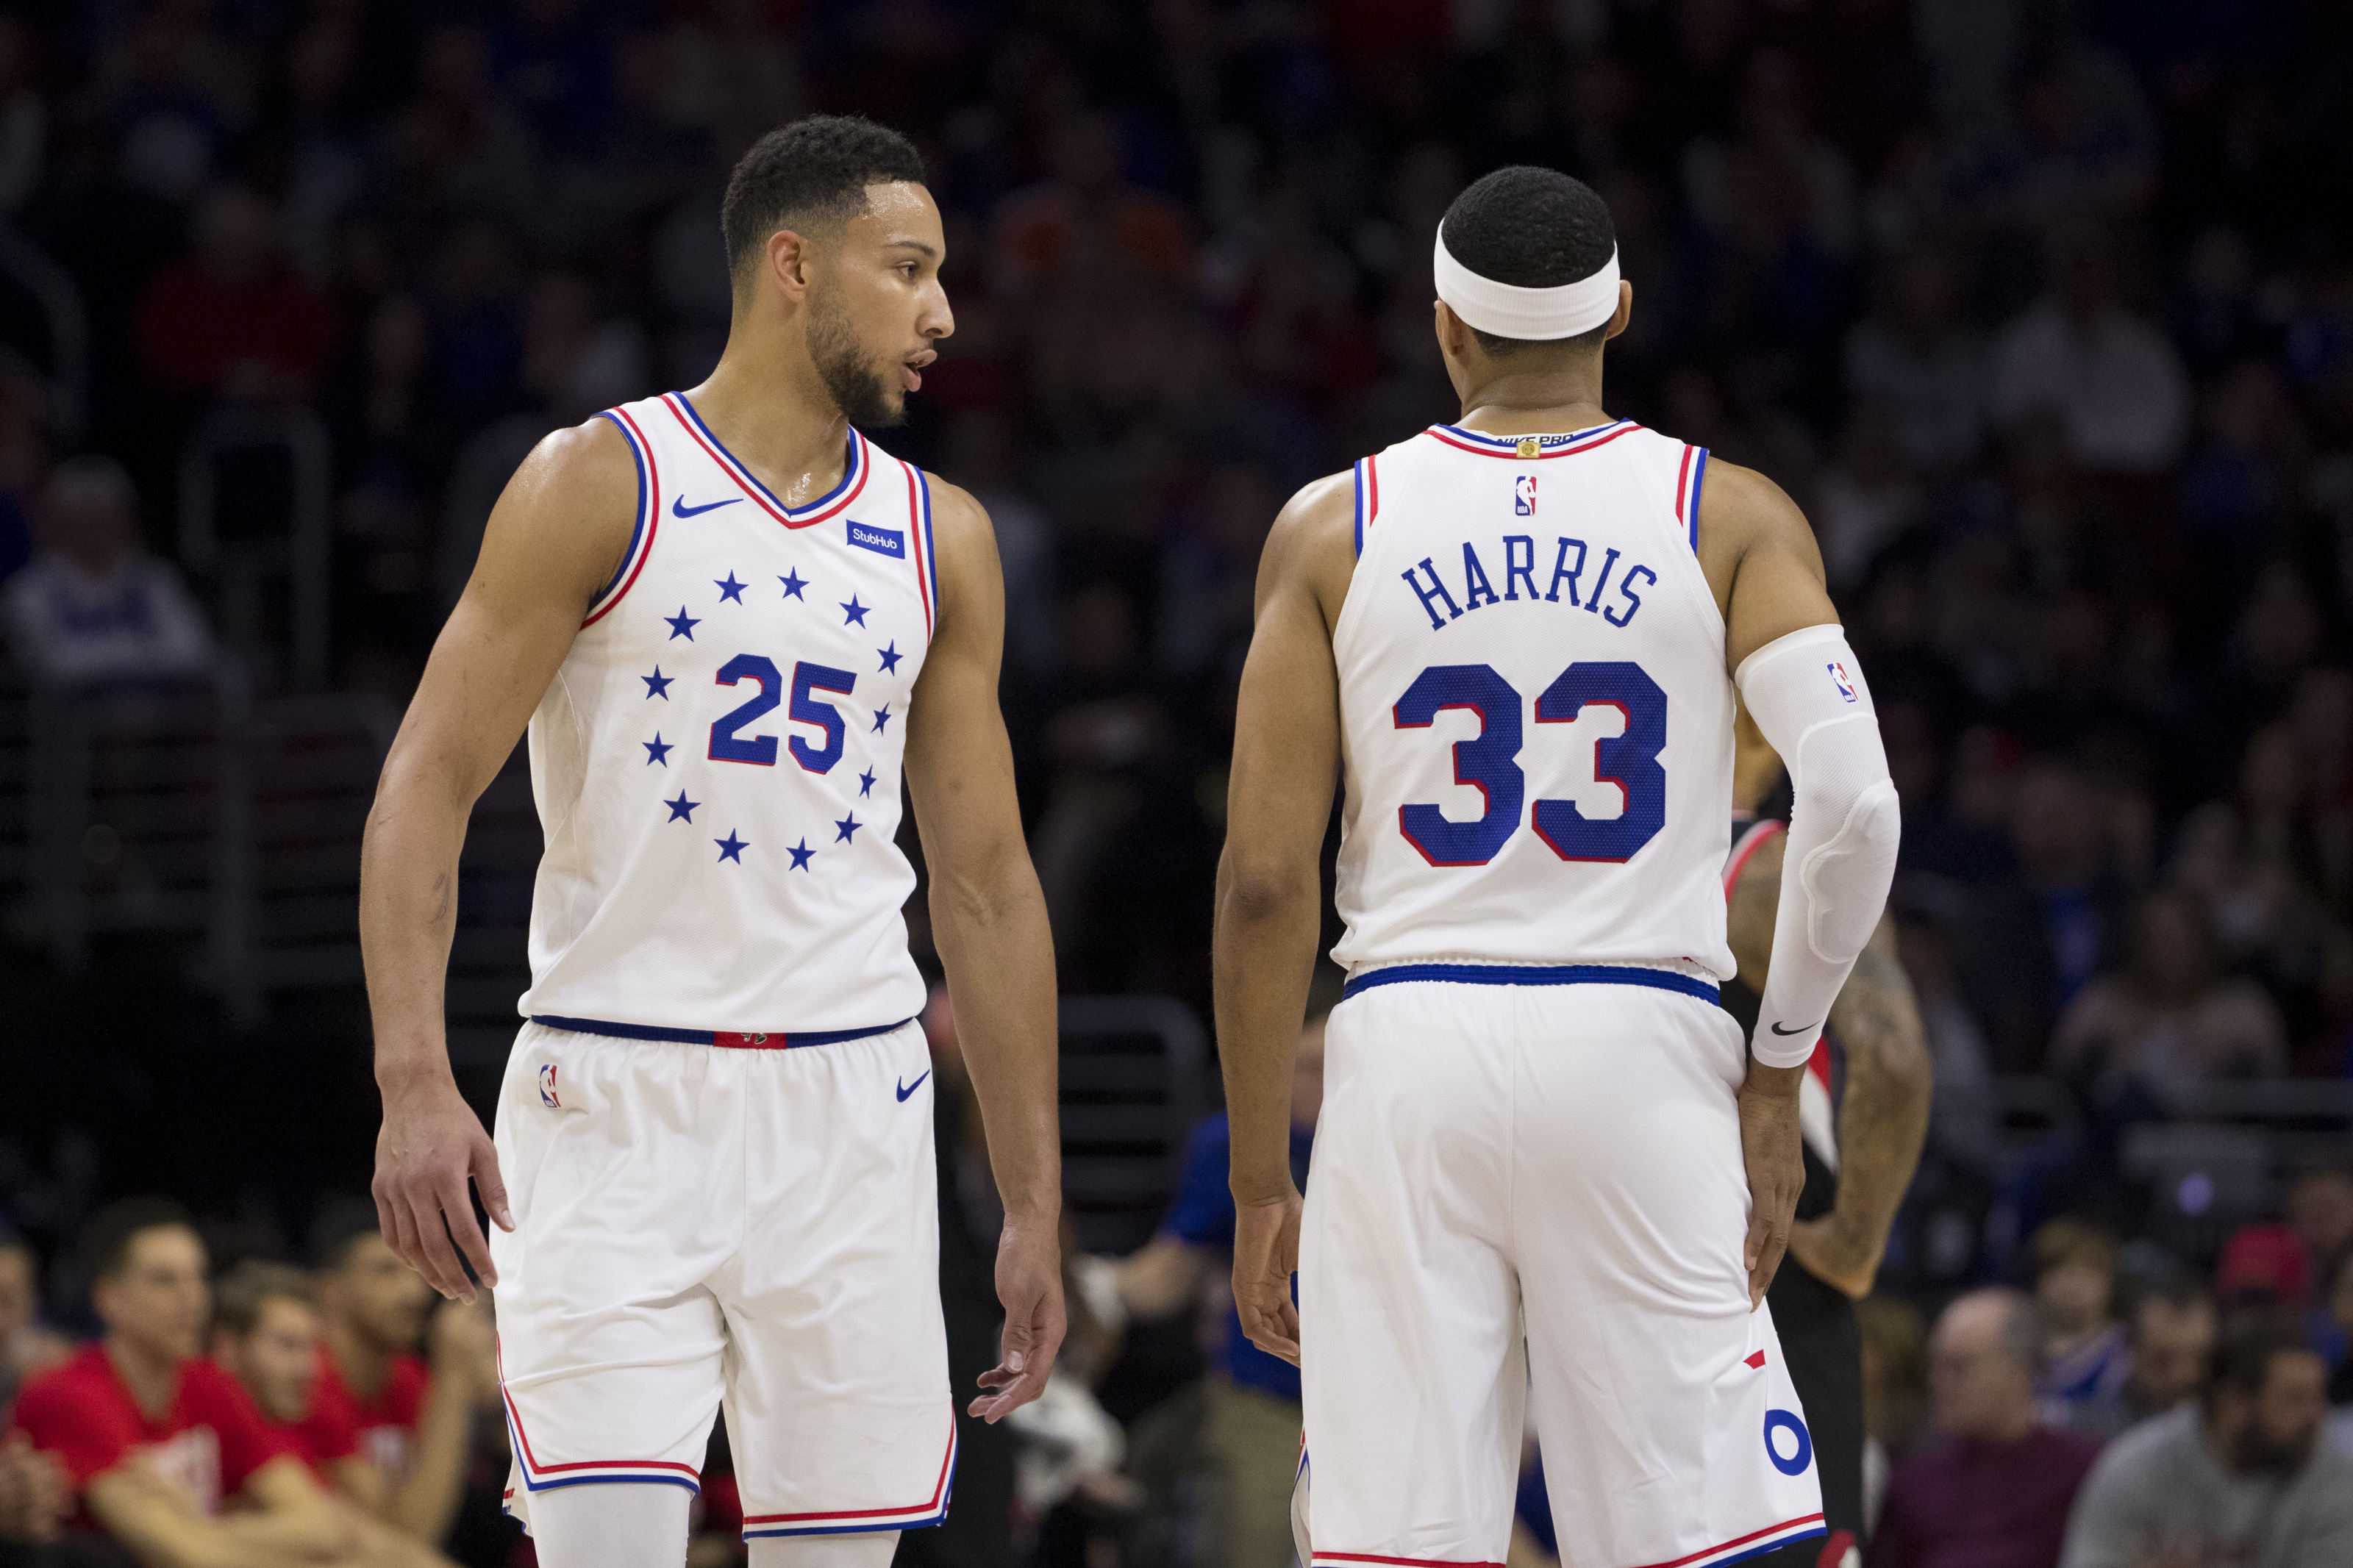 NBA news: Ben Simmons height, jump shot, 76ers updates, Tobias Harris